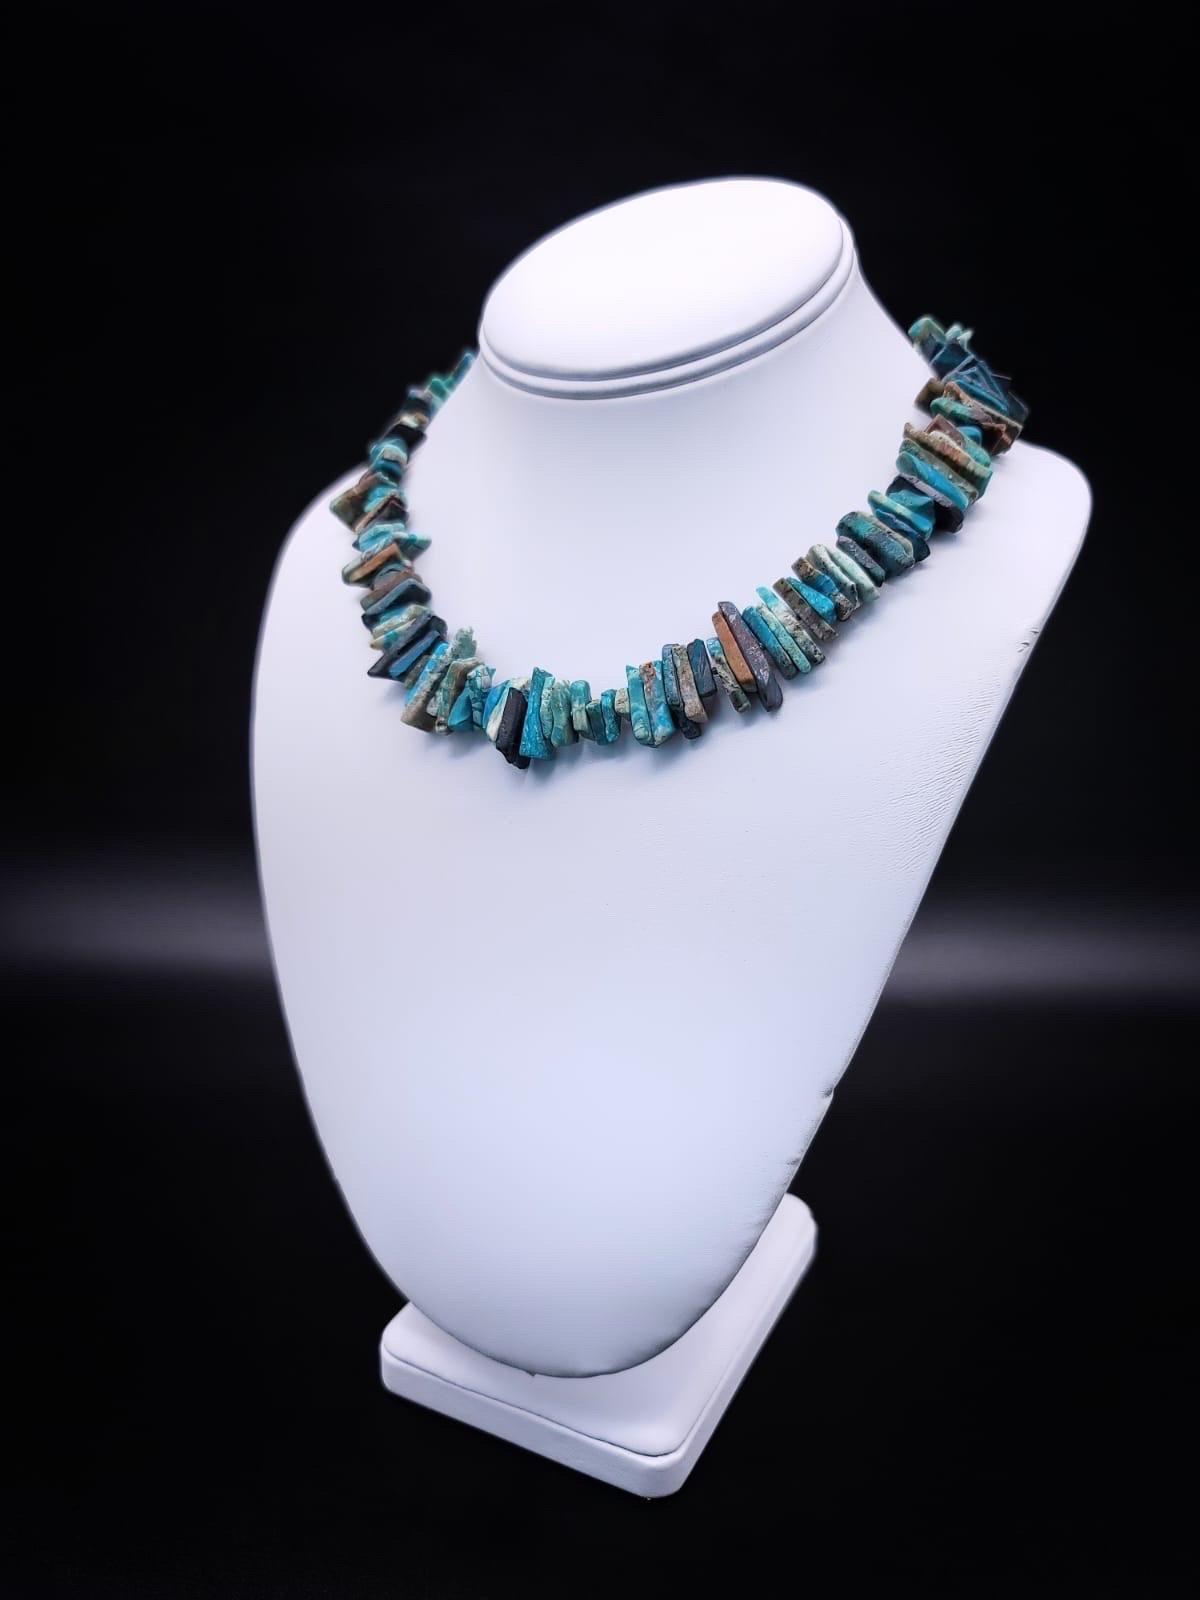 Einzigartig

Eine Halskette mit blauen Opalscherben aus Peru. Jede Opalscherbe besticht durch eine faszinierende Vielfalt an satten Farben, die von tiefem Ozeanblau bis hin zu leuchtendem Grün und gelegentlichen Karamelltönen reichen und die